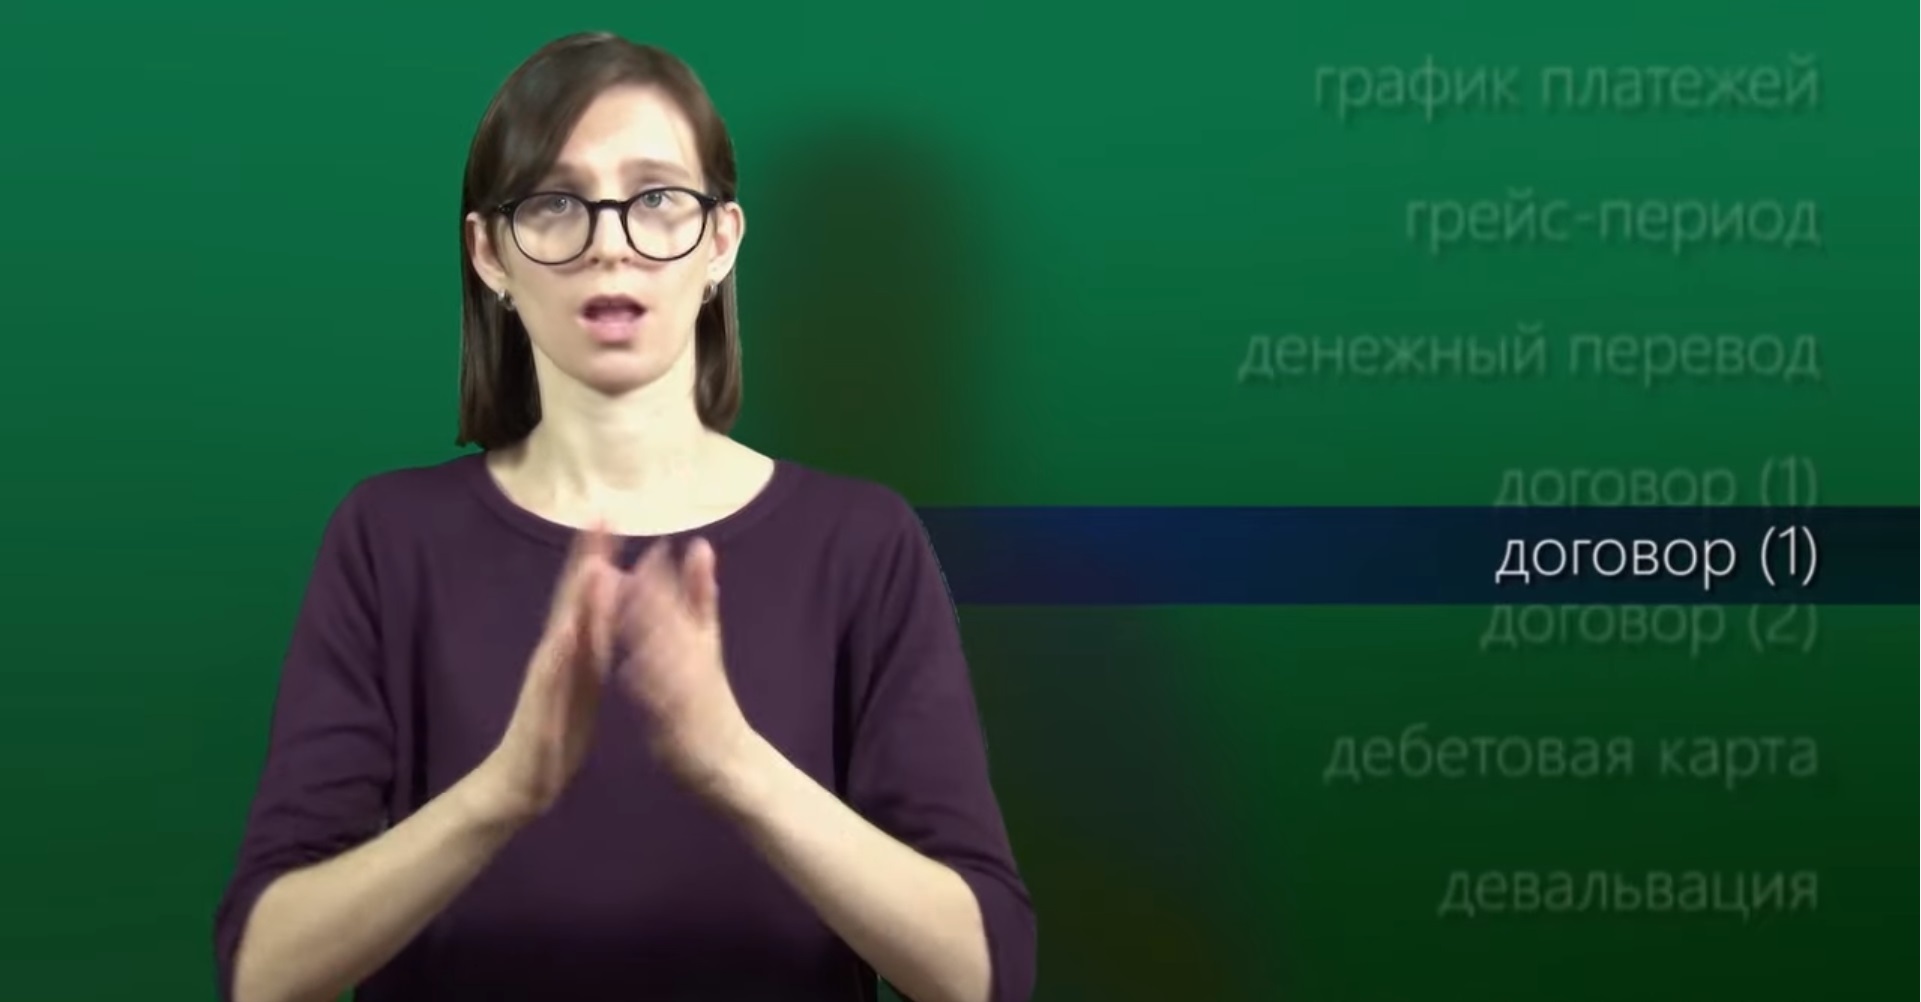 РЖЯ русский жестовый язык